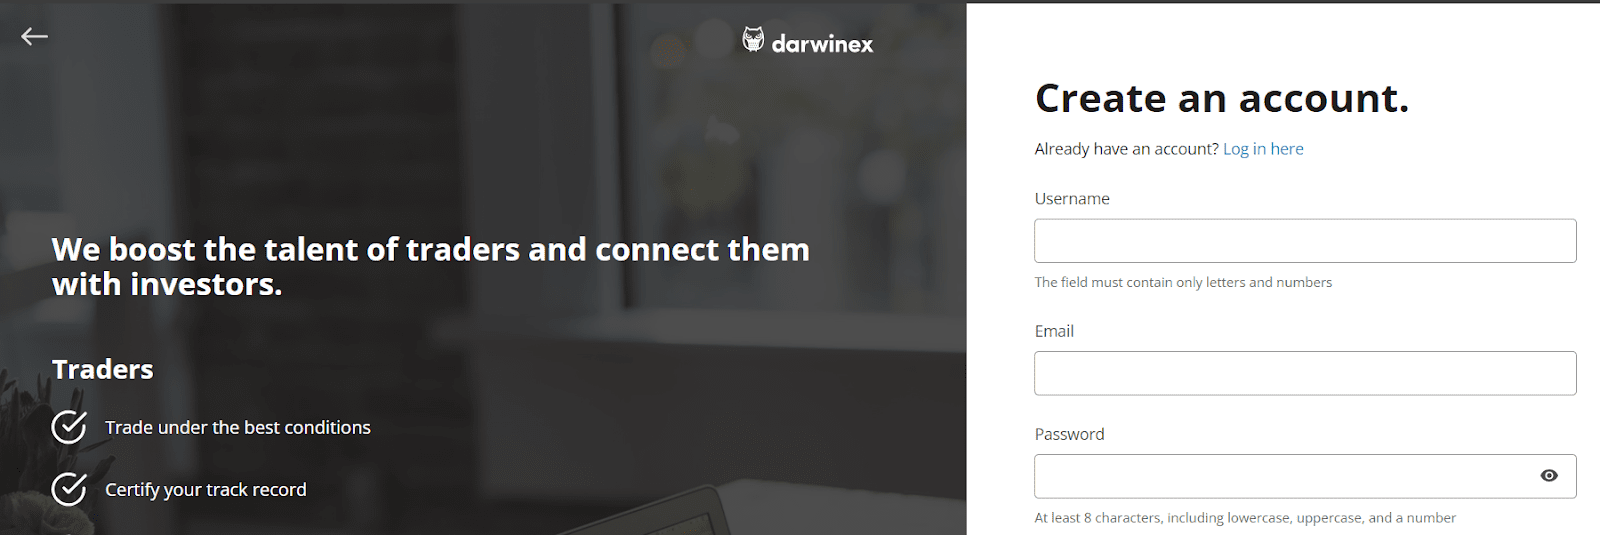 Обзор Darwinex — Запуск регистрации